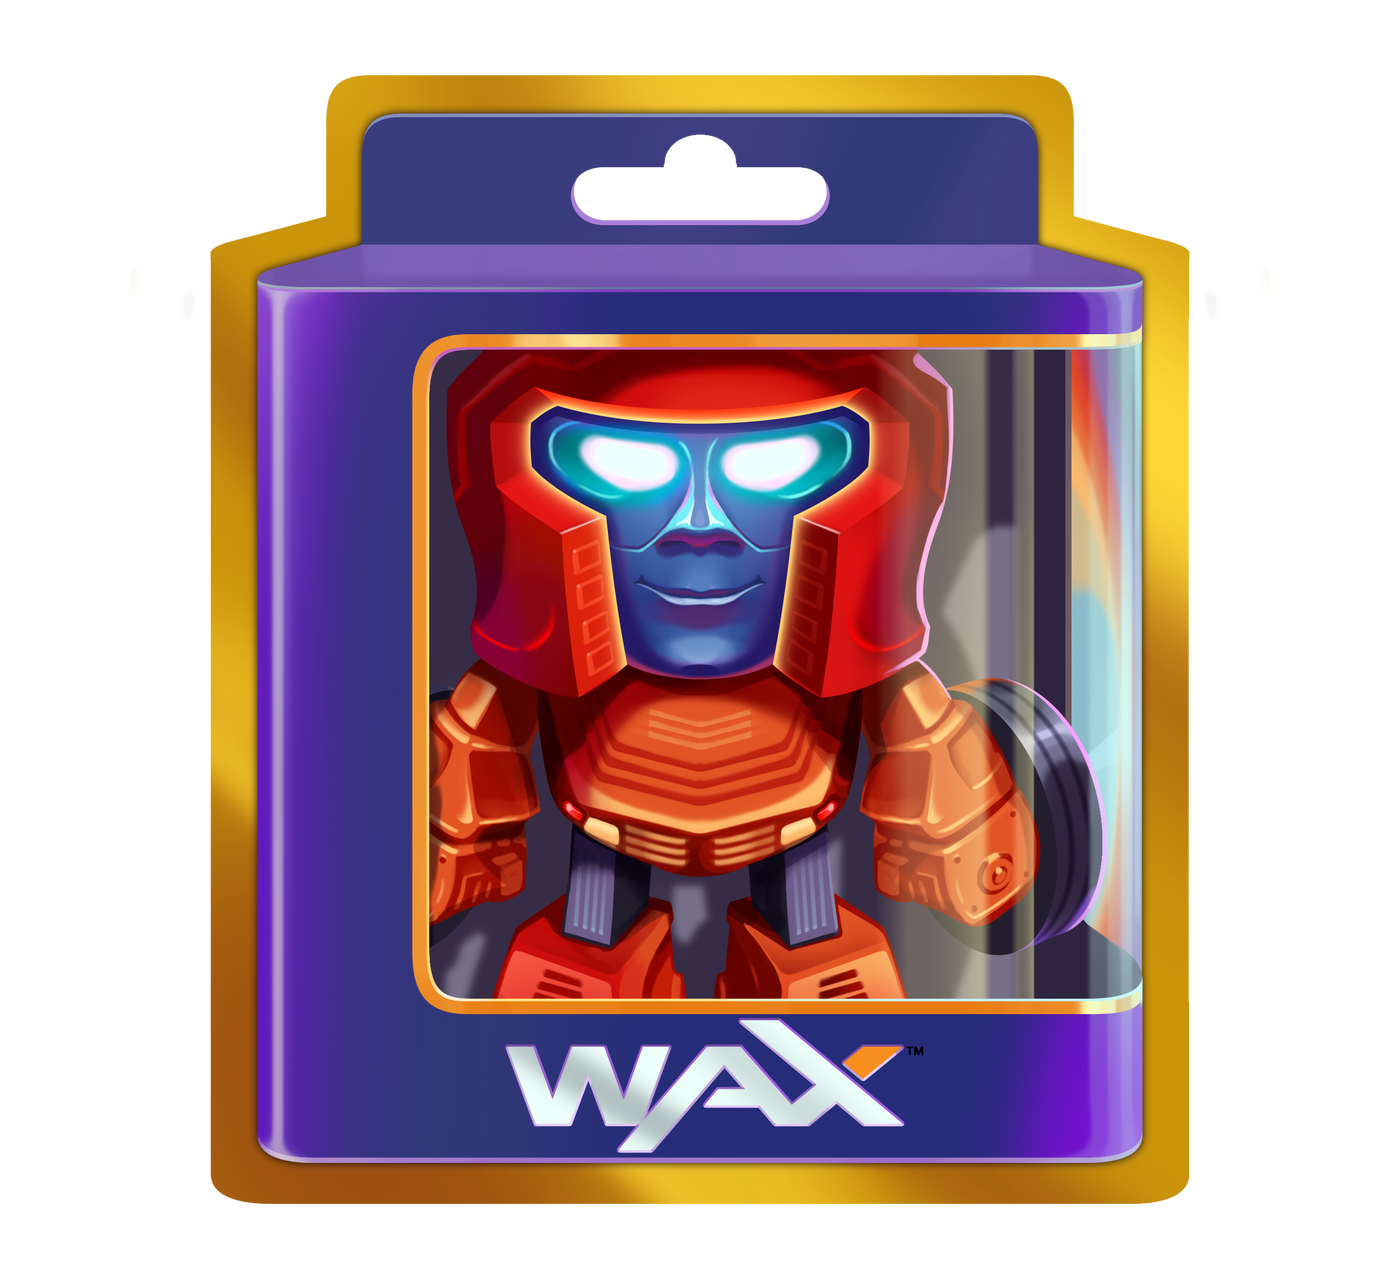 상자에 들어 있는 WAX 디지털 장난감.